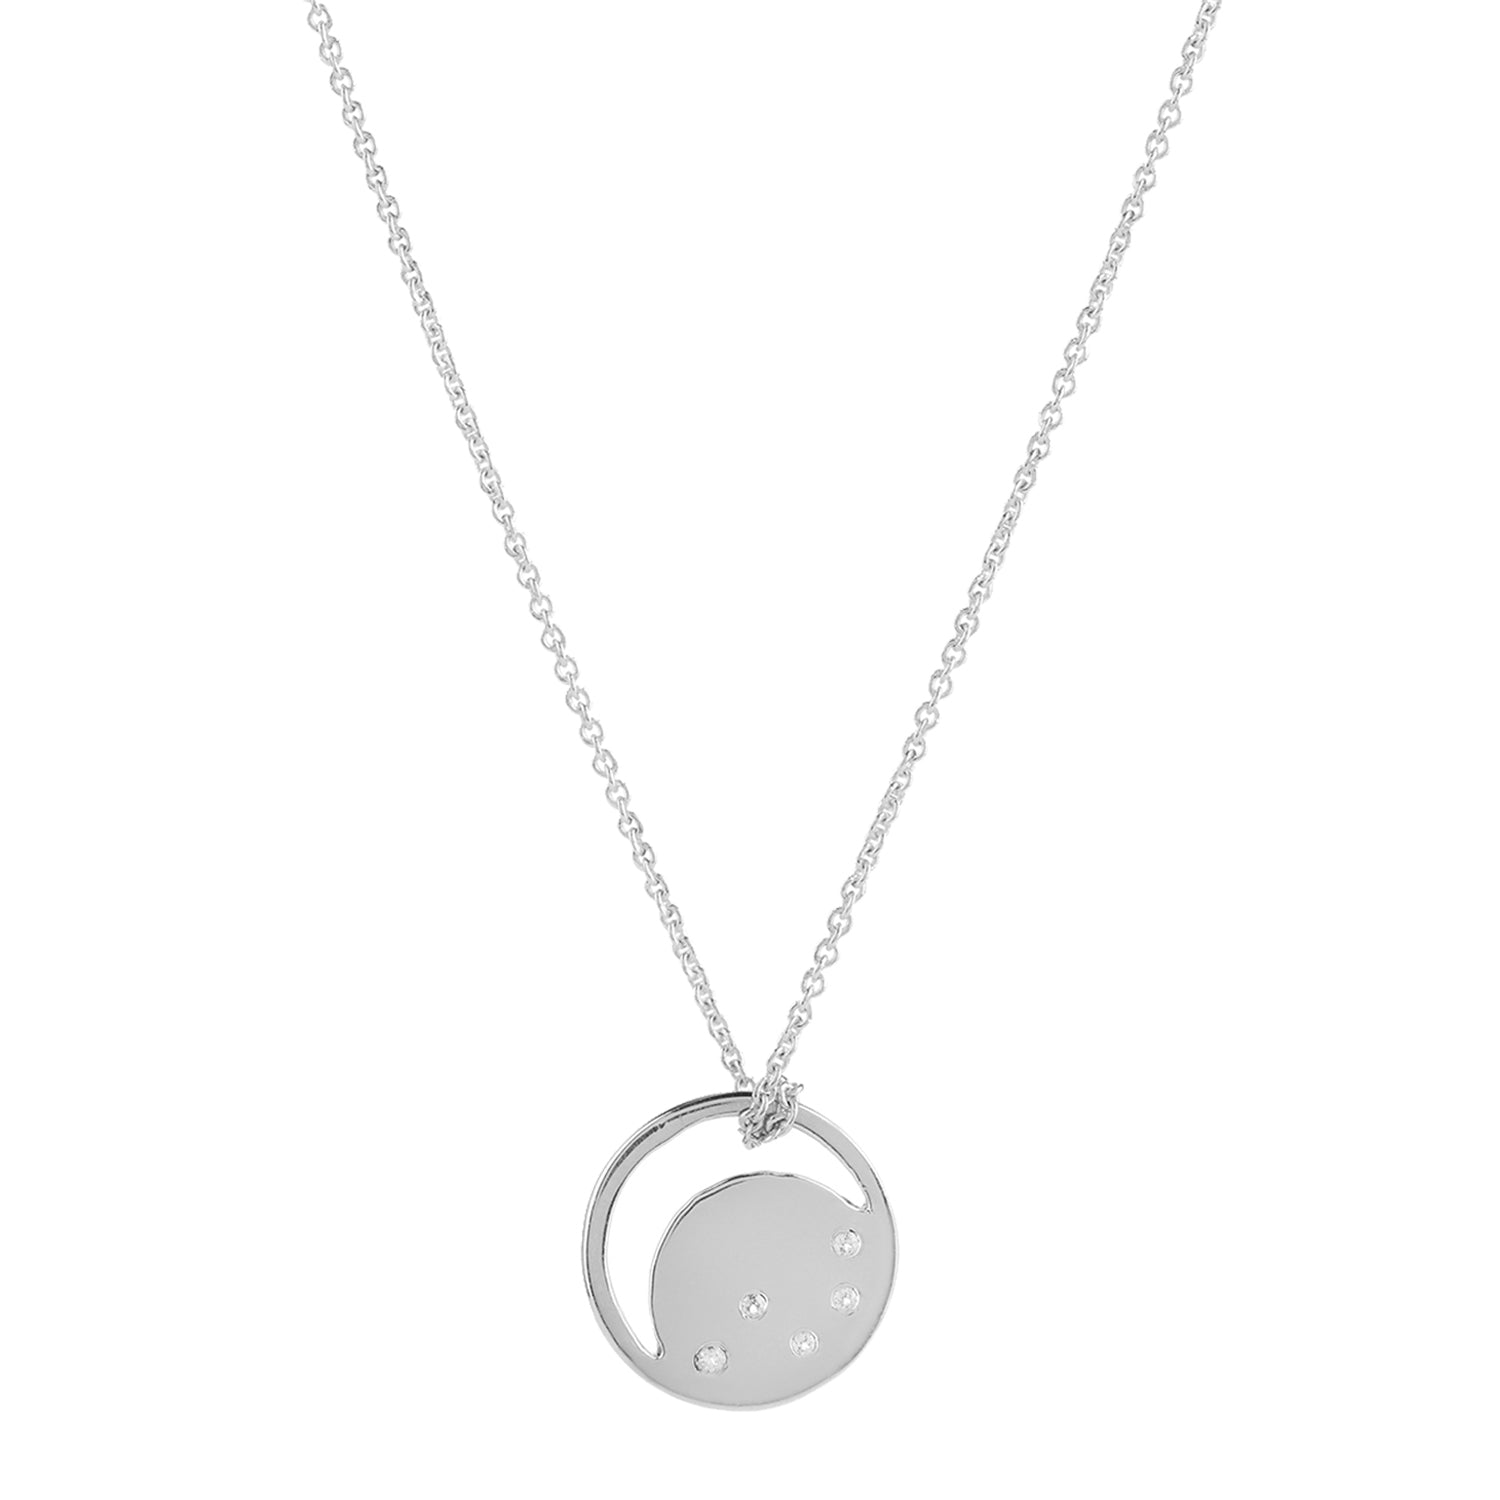 Silver eclipse necklace, white topaz, unique British design